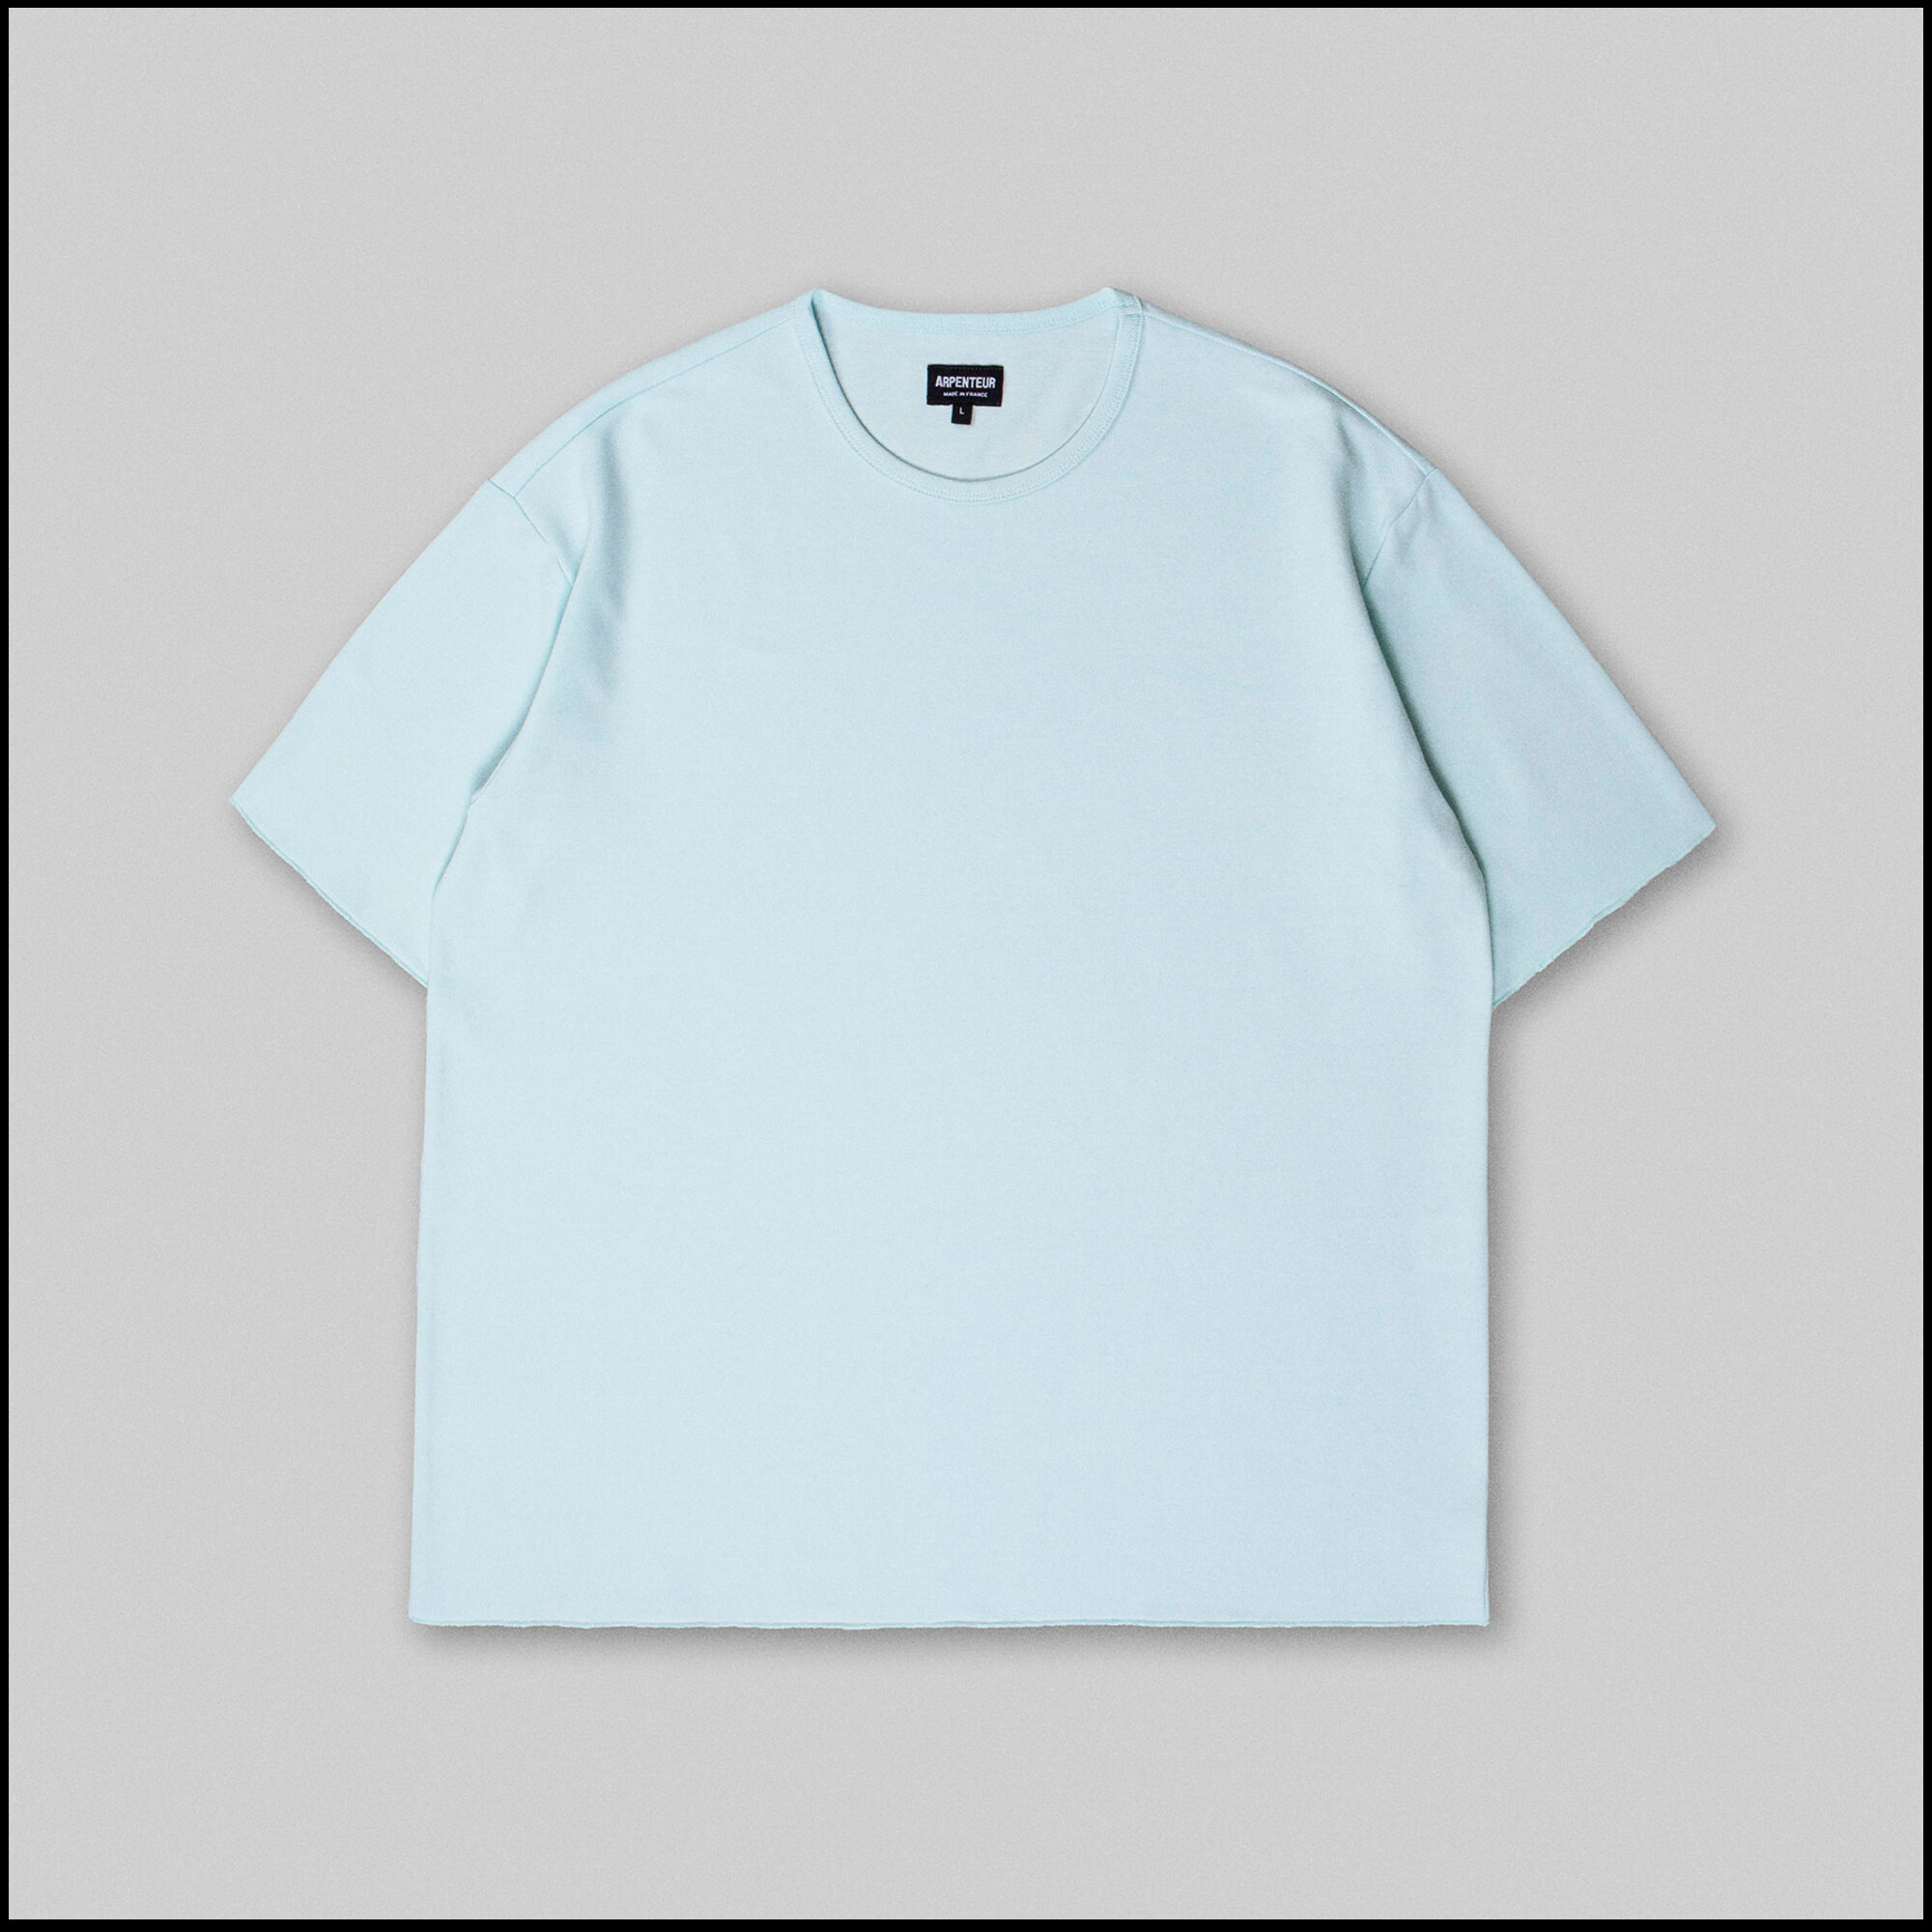 PONTUS t-shirt by Arpenteur in Pale cloud color